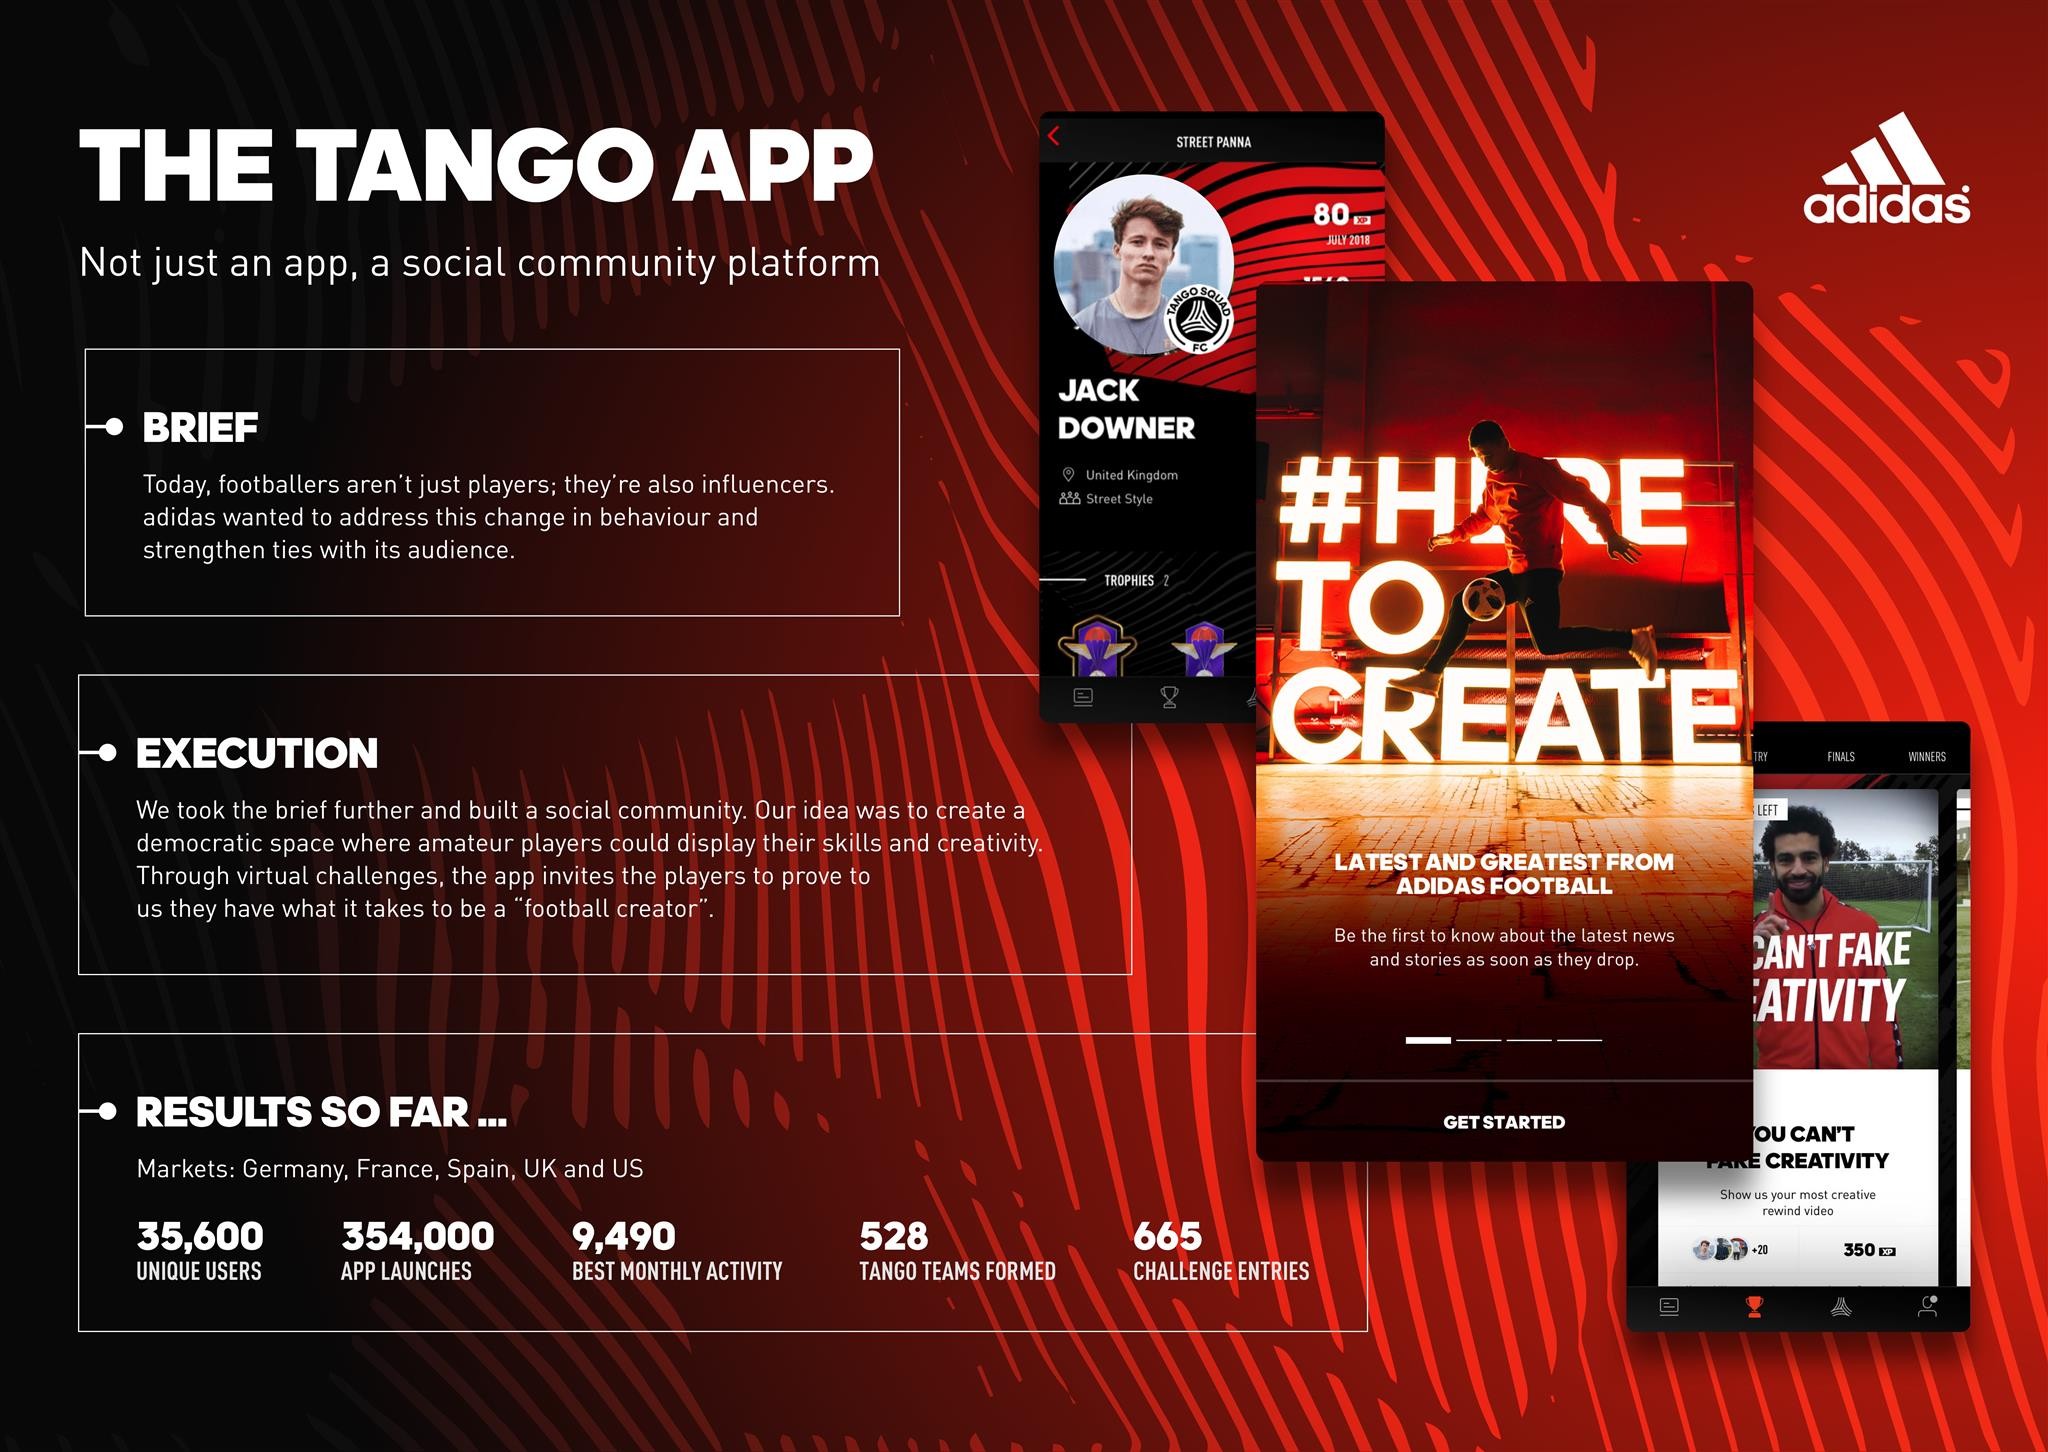 The Tango App